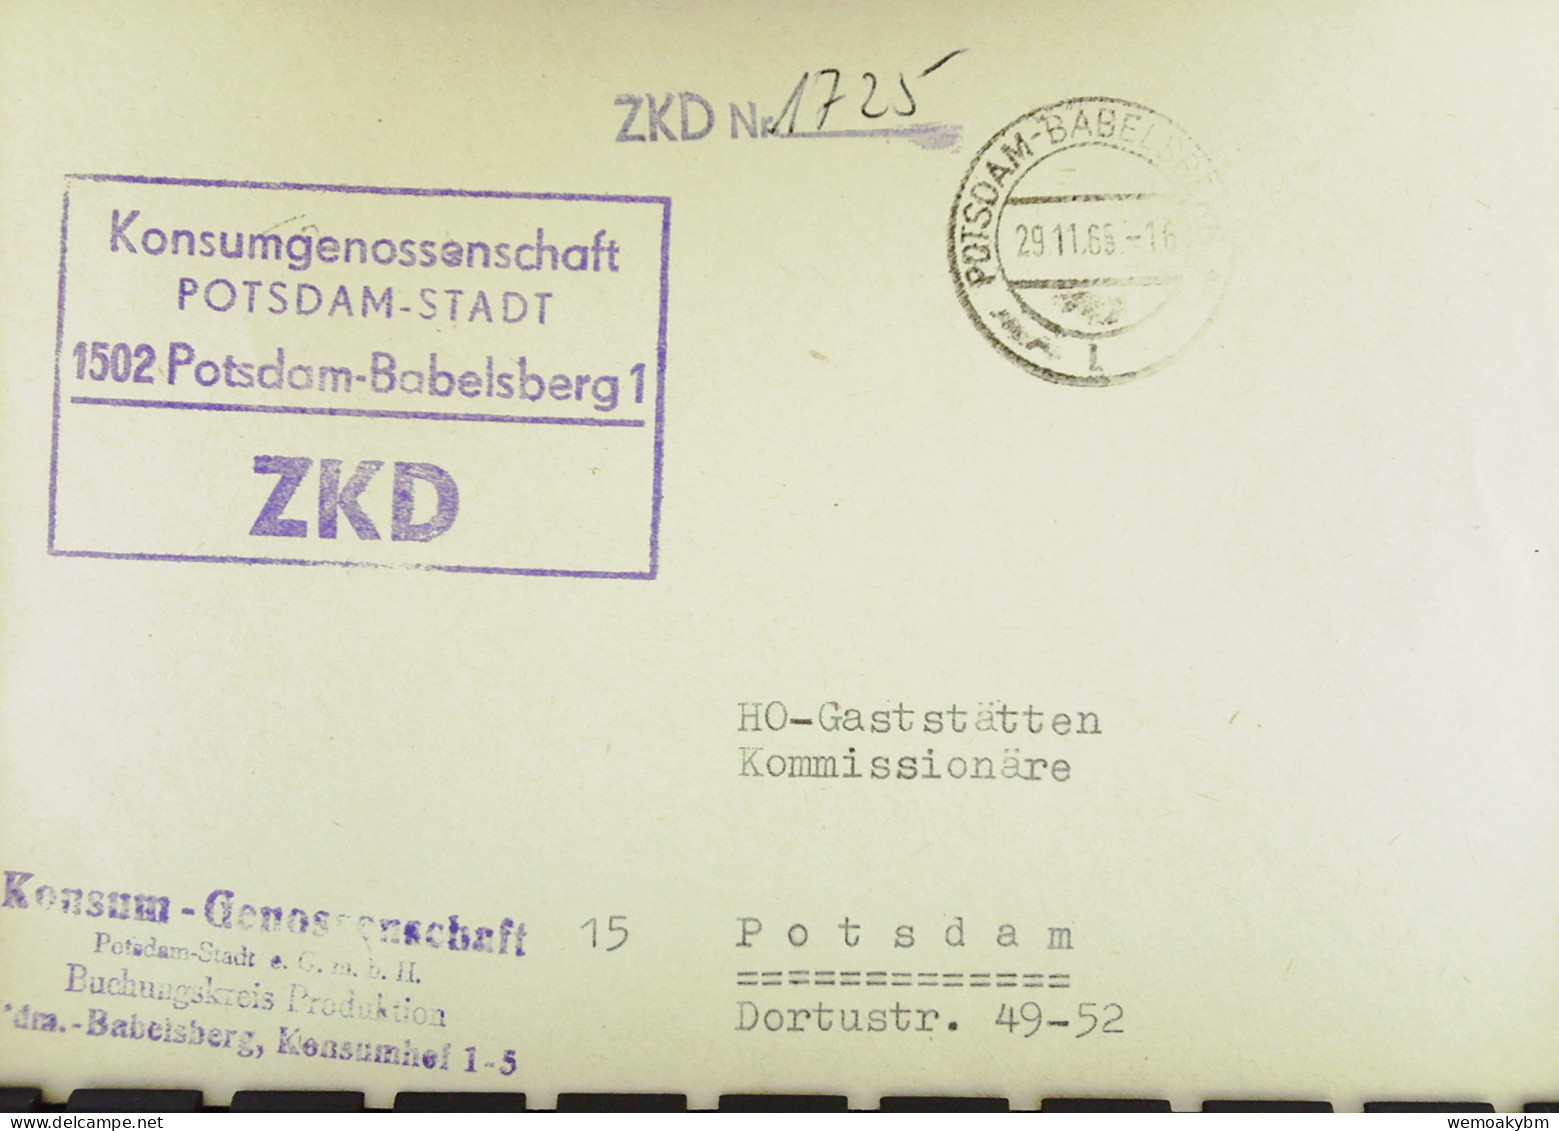 Orts-Brief Mit ZKD-Kastenstpl. "Konsum-Genossenschaft P-Stadt 1502 Potsdam-Babelsberg1" Vom 29.11.65 An HO Potsdam-Stadt - Central Mail Service